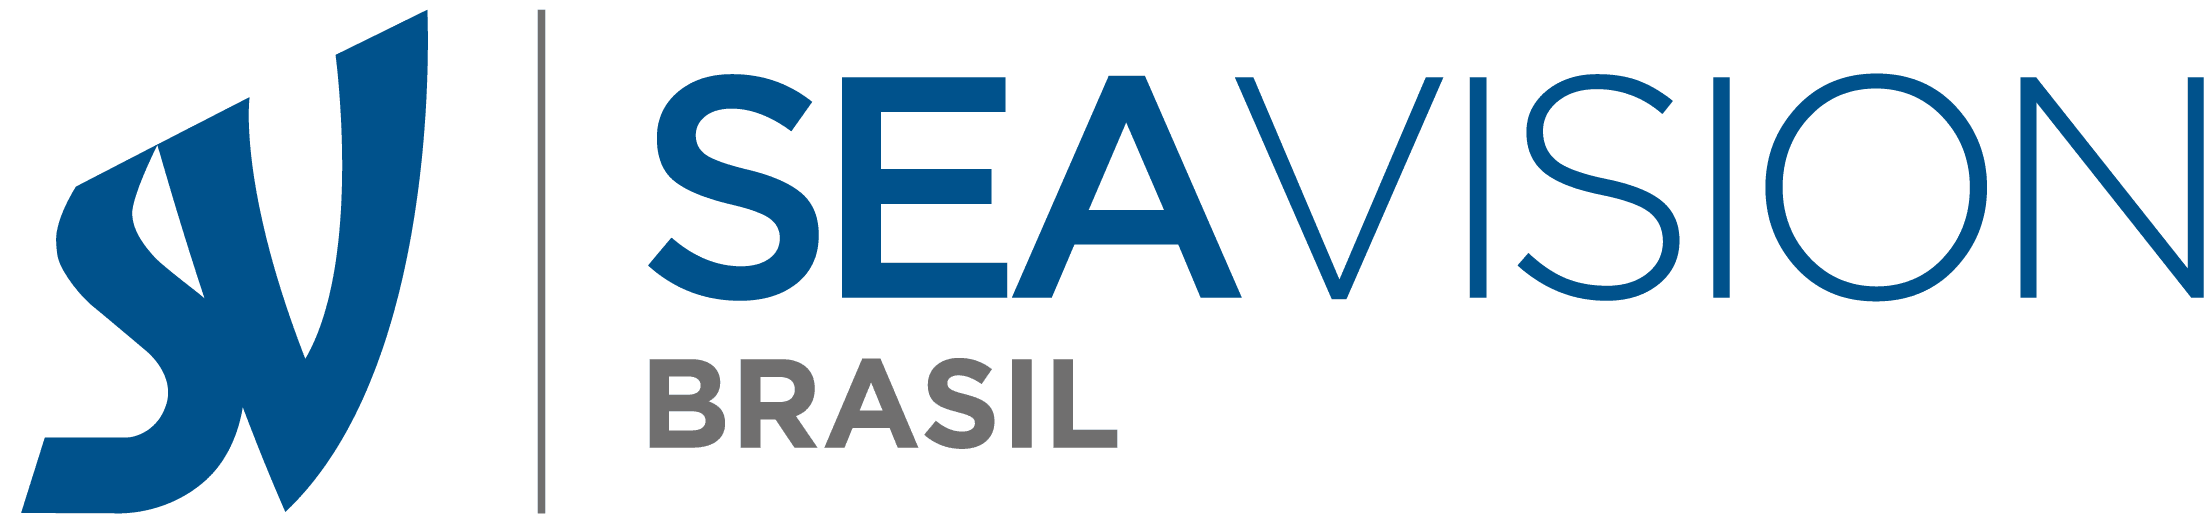 logo sea vision brasil blue